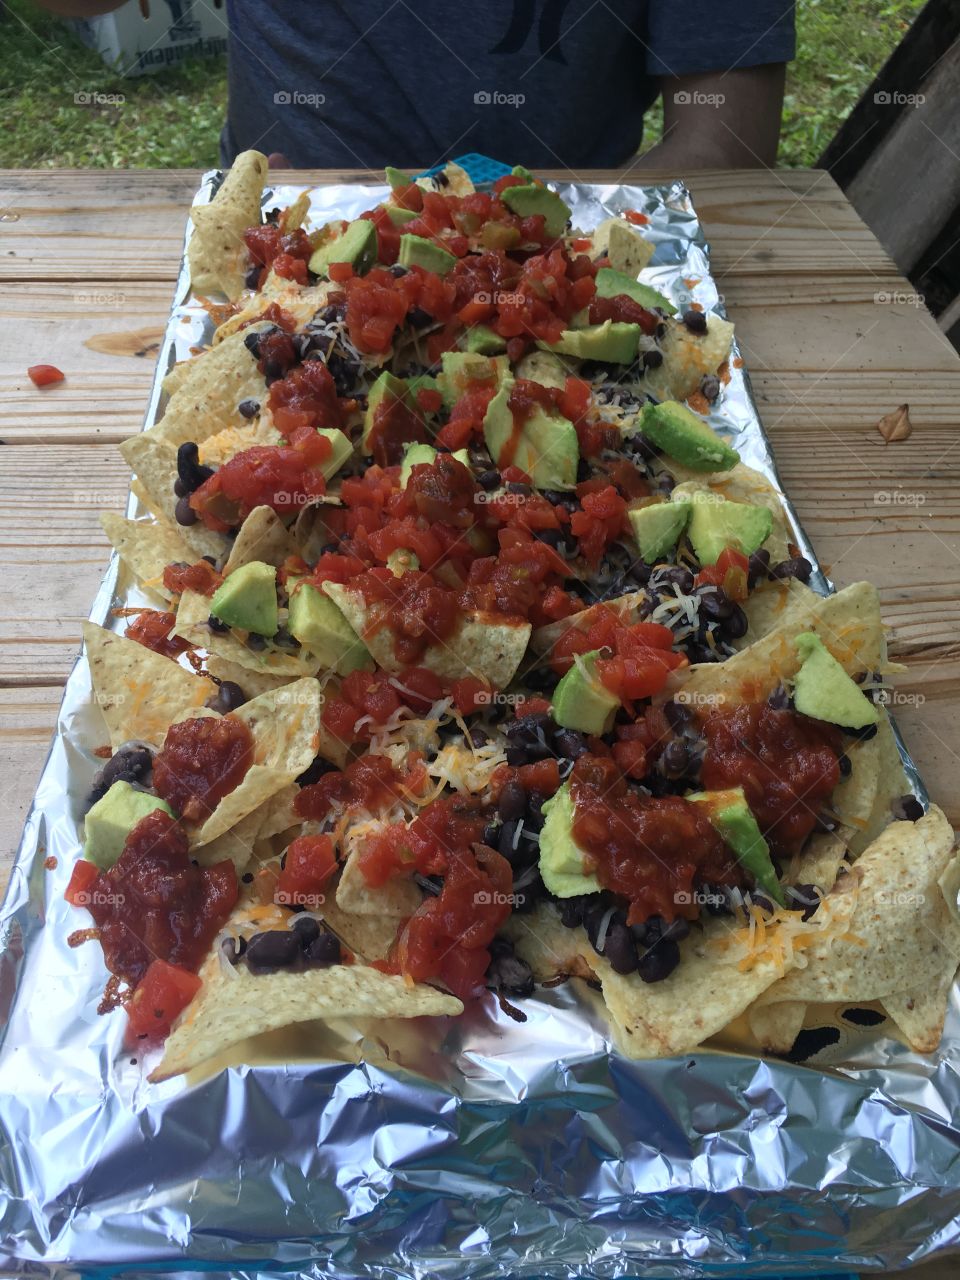 Fire nachos 